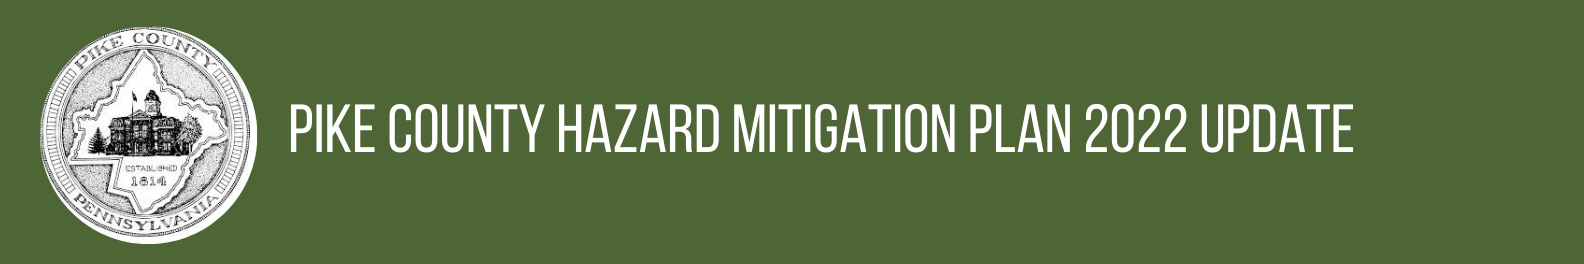 Pike County Hazard Mitigation Plan Update